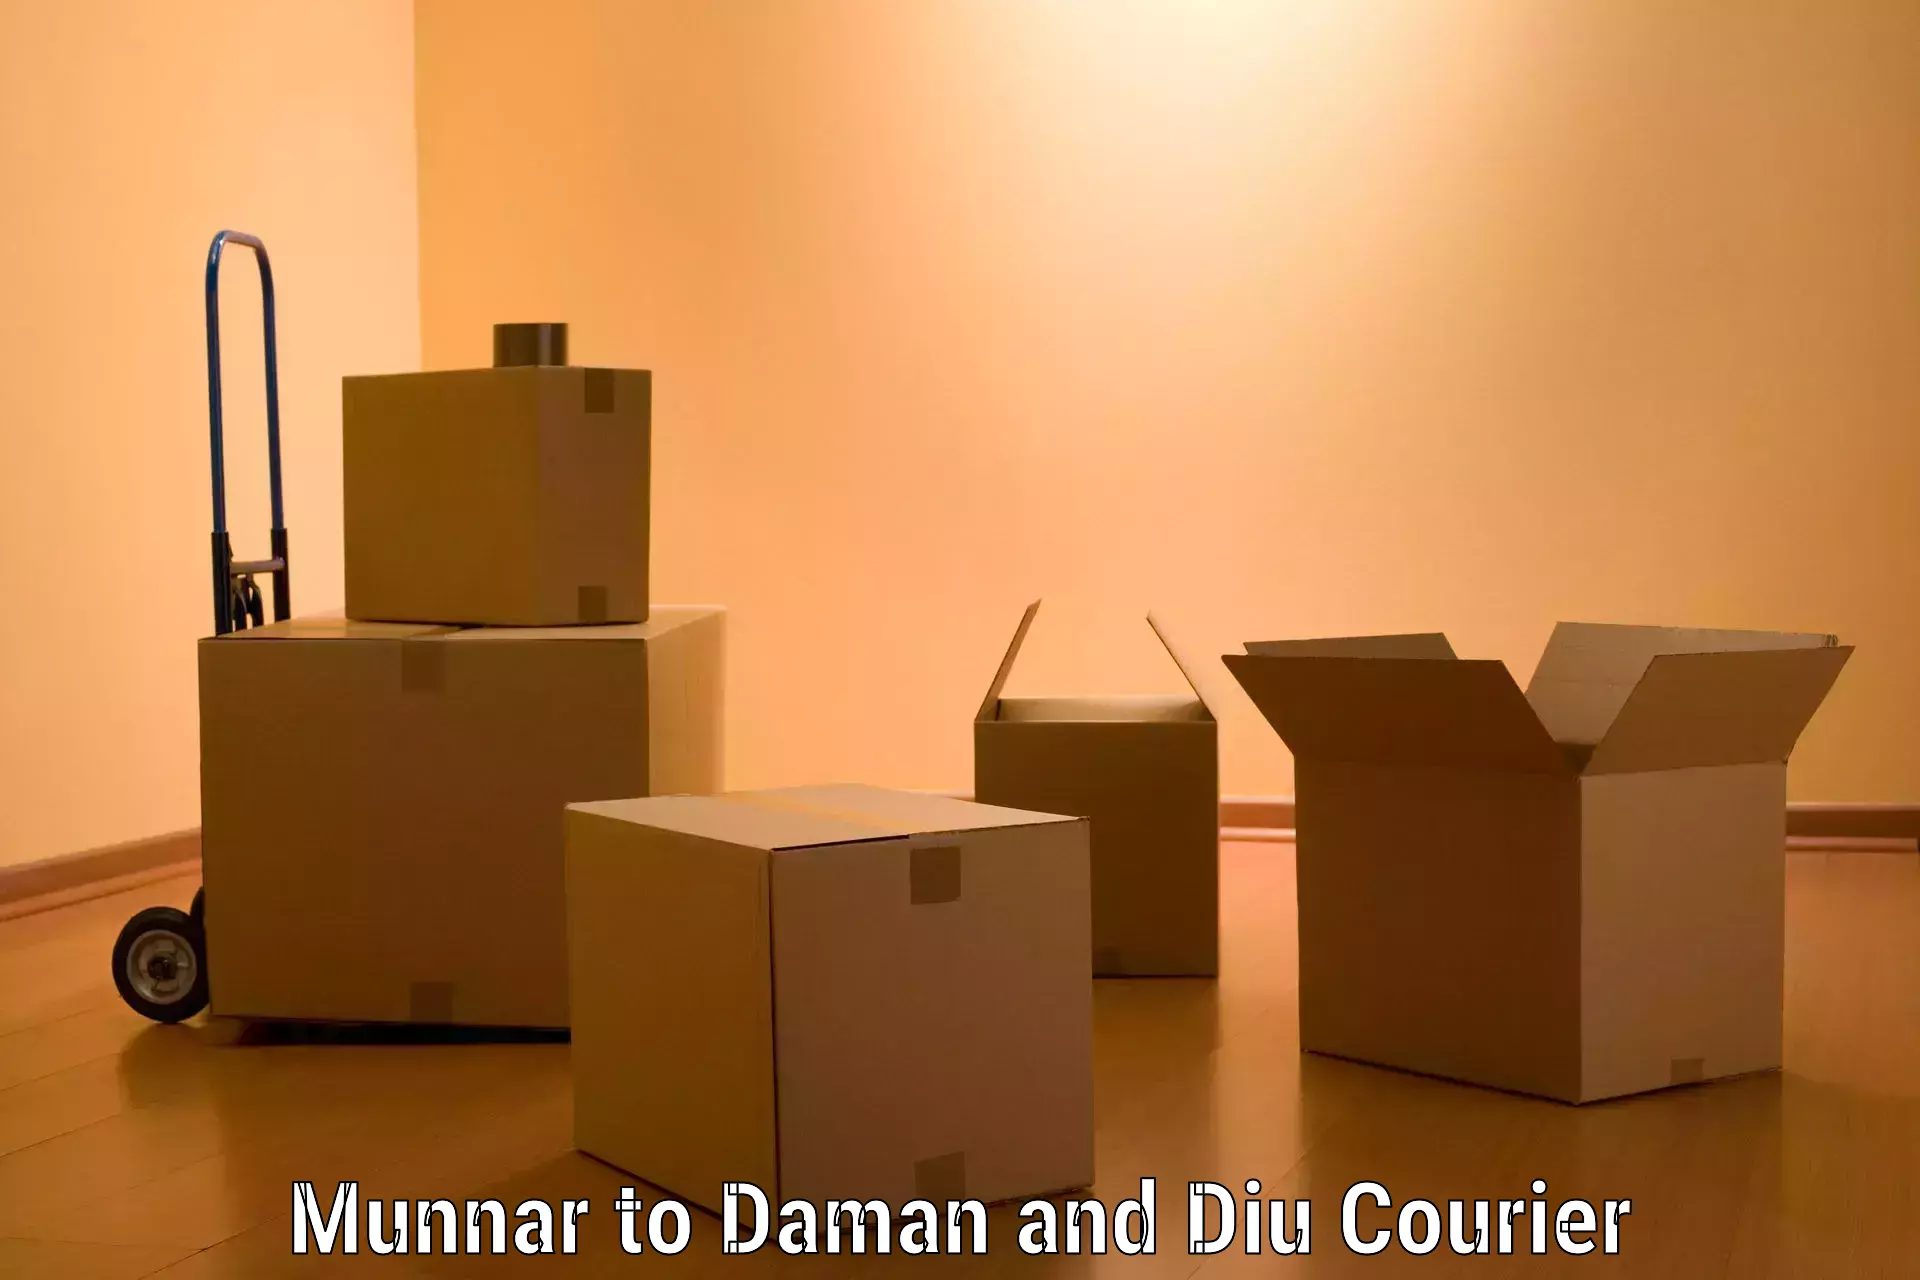 Efficient moving company Munnar to Daman and Diu